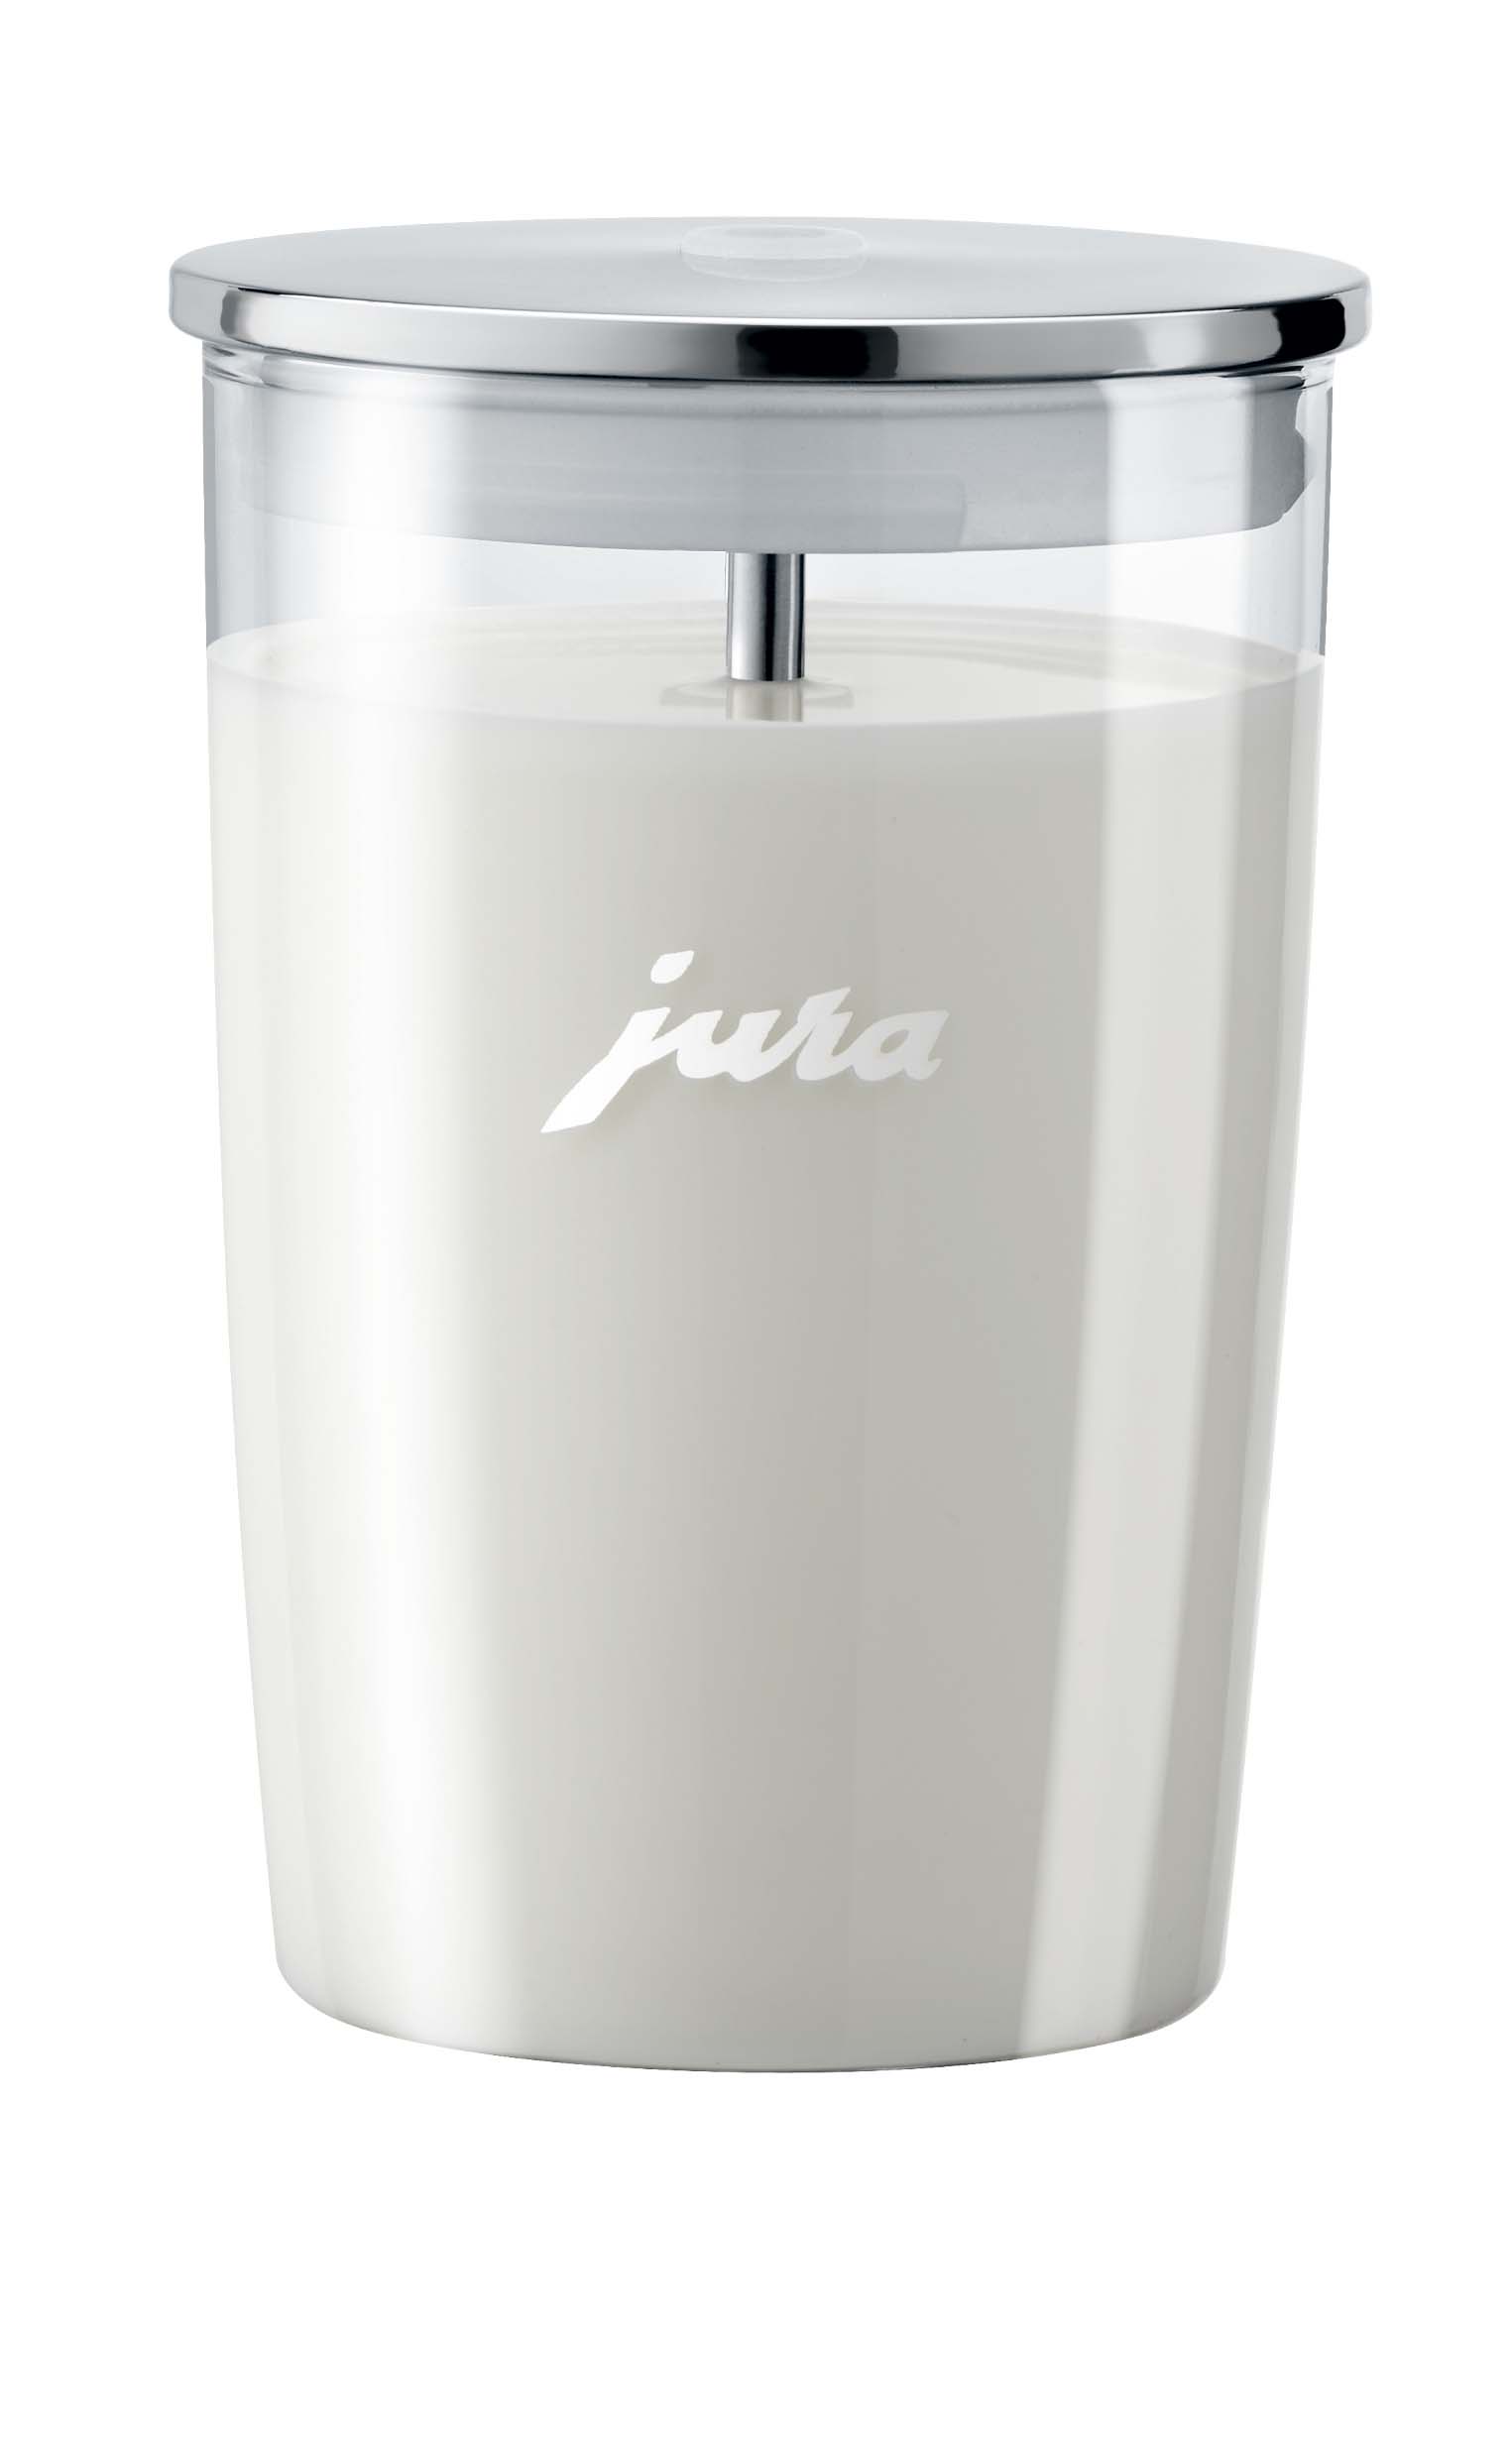 Jura milk container